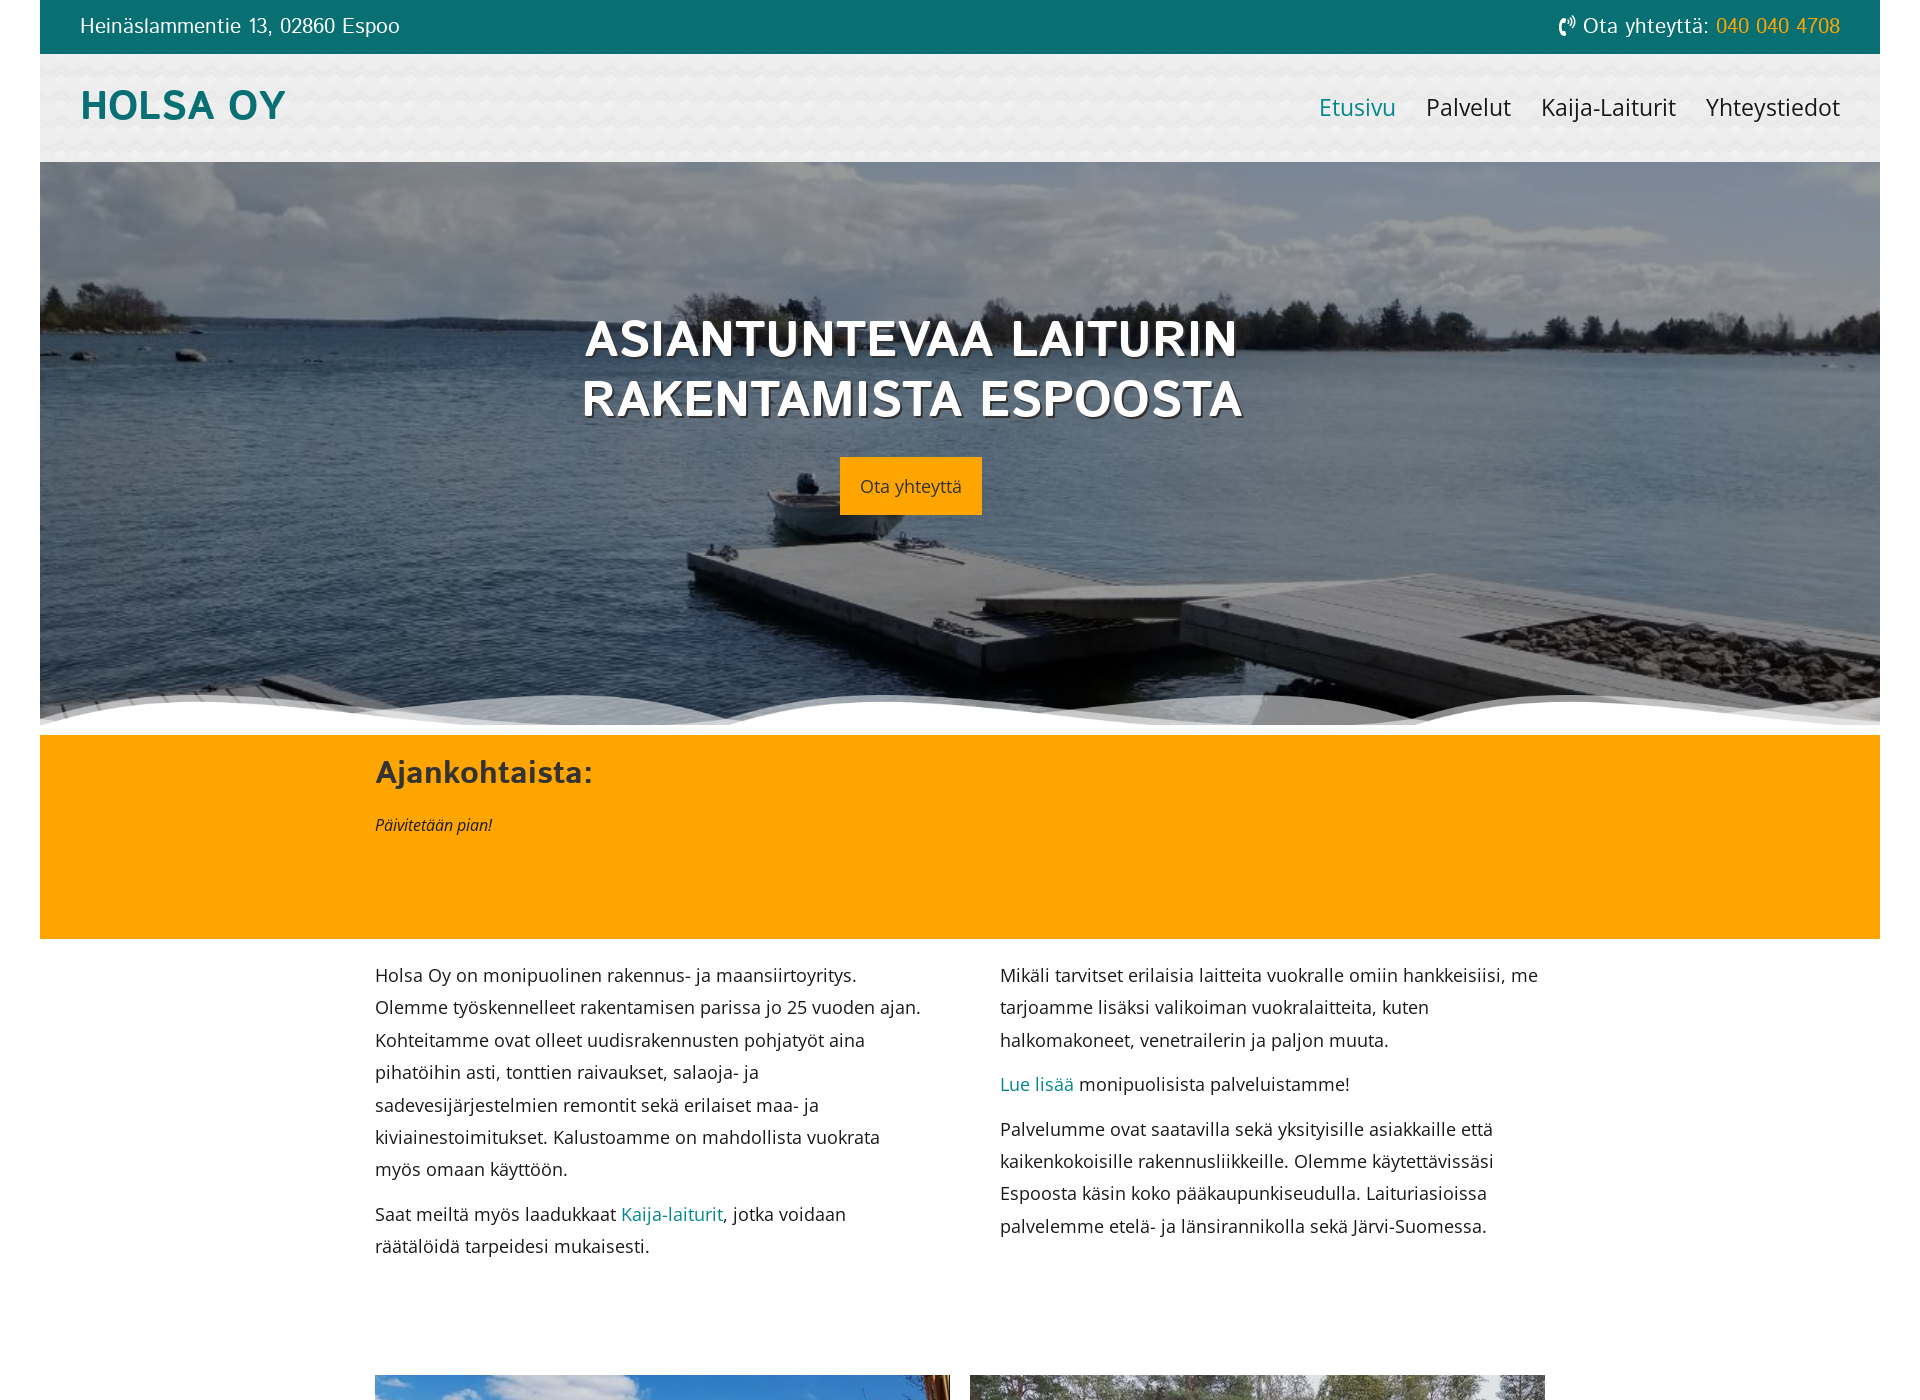 Screenshot for kaijalaiturit.fi